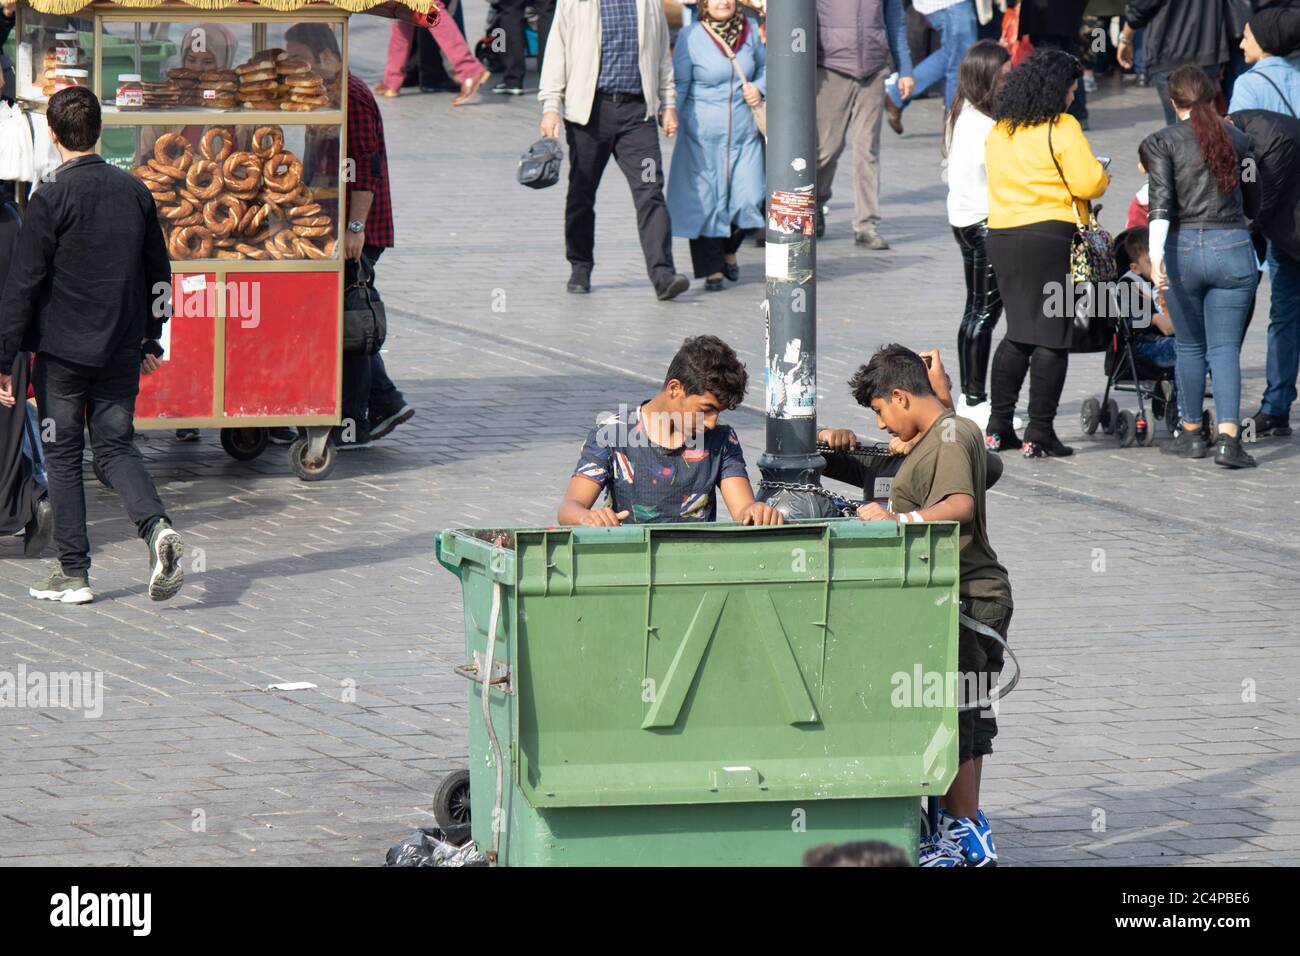 Kinder, die Essen in einem Mülleimer suchen. Die Leute sind da  Stockfotografie - Alamy